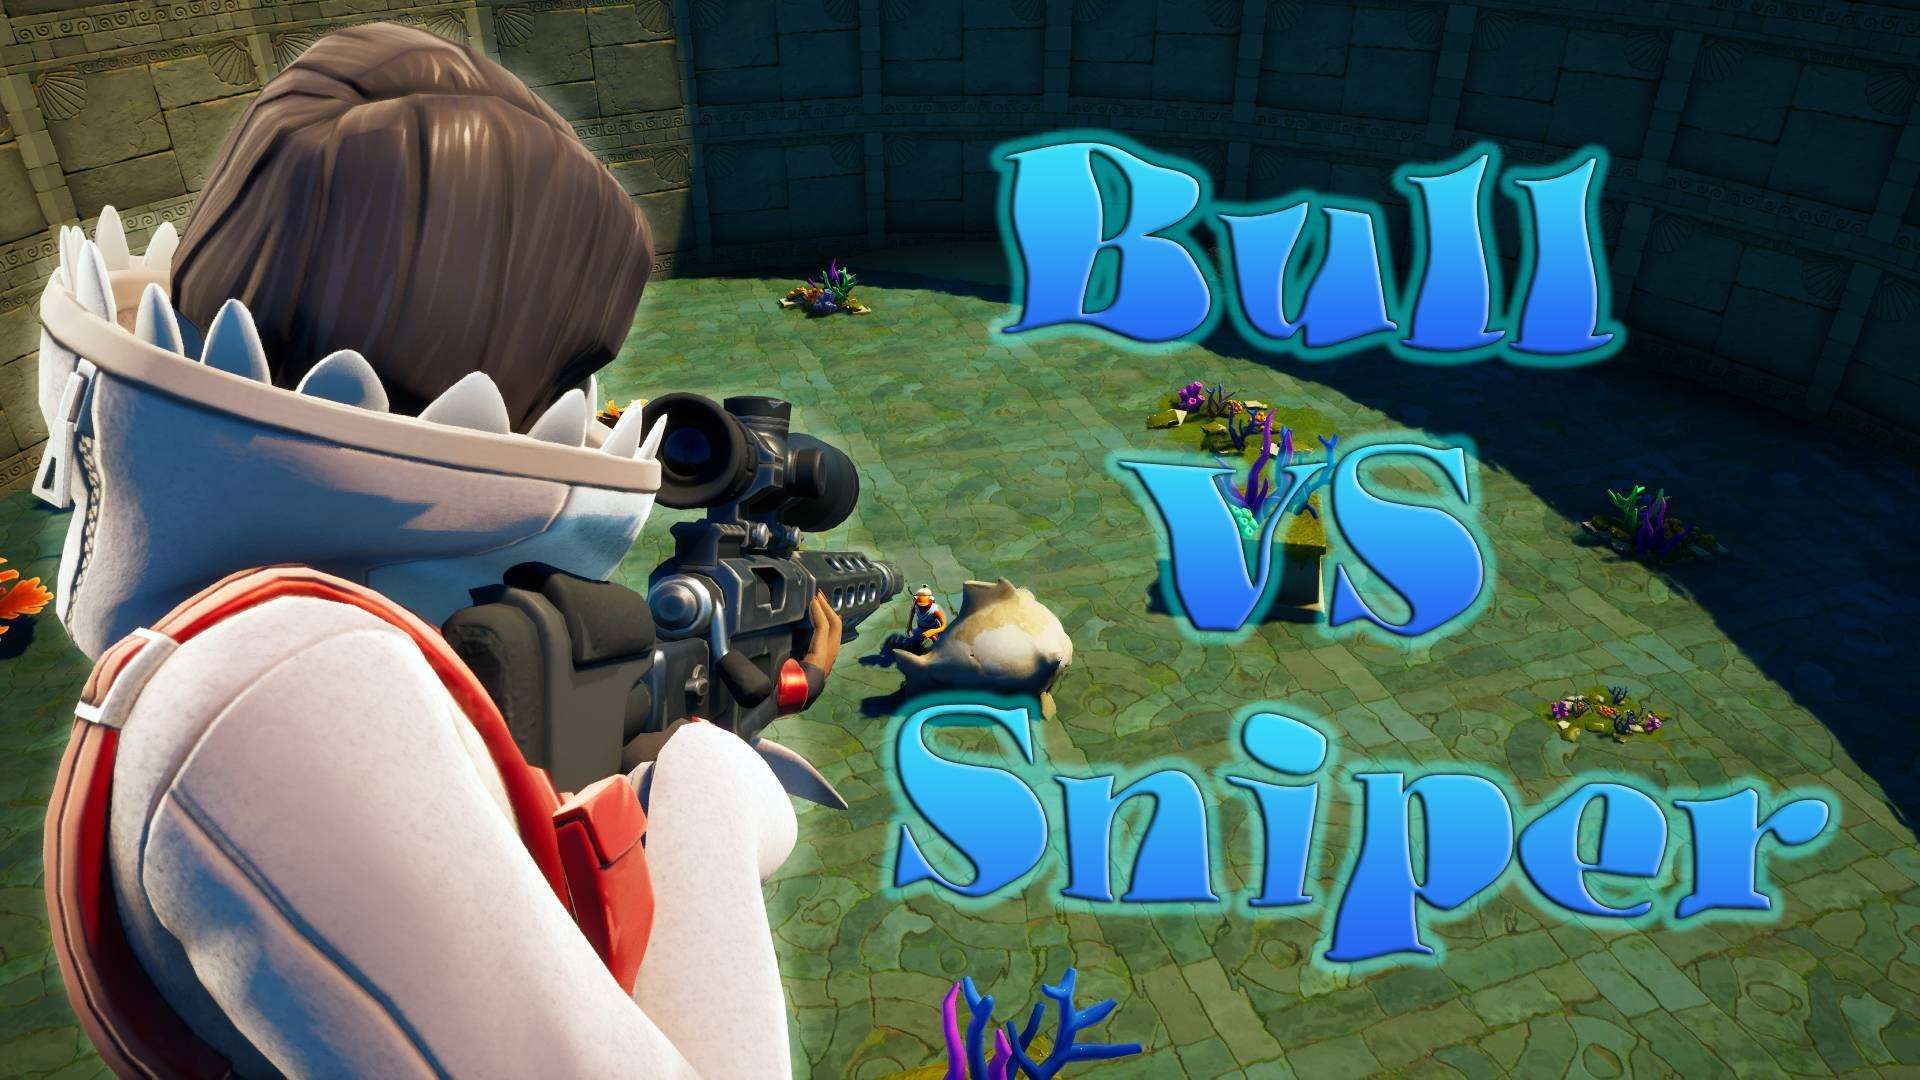 Bull vs Sniper